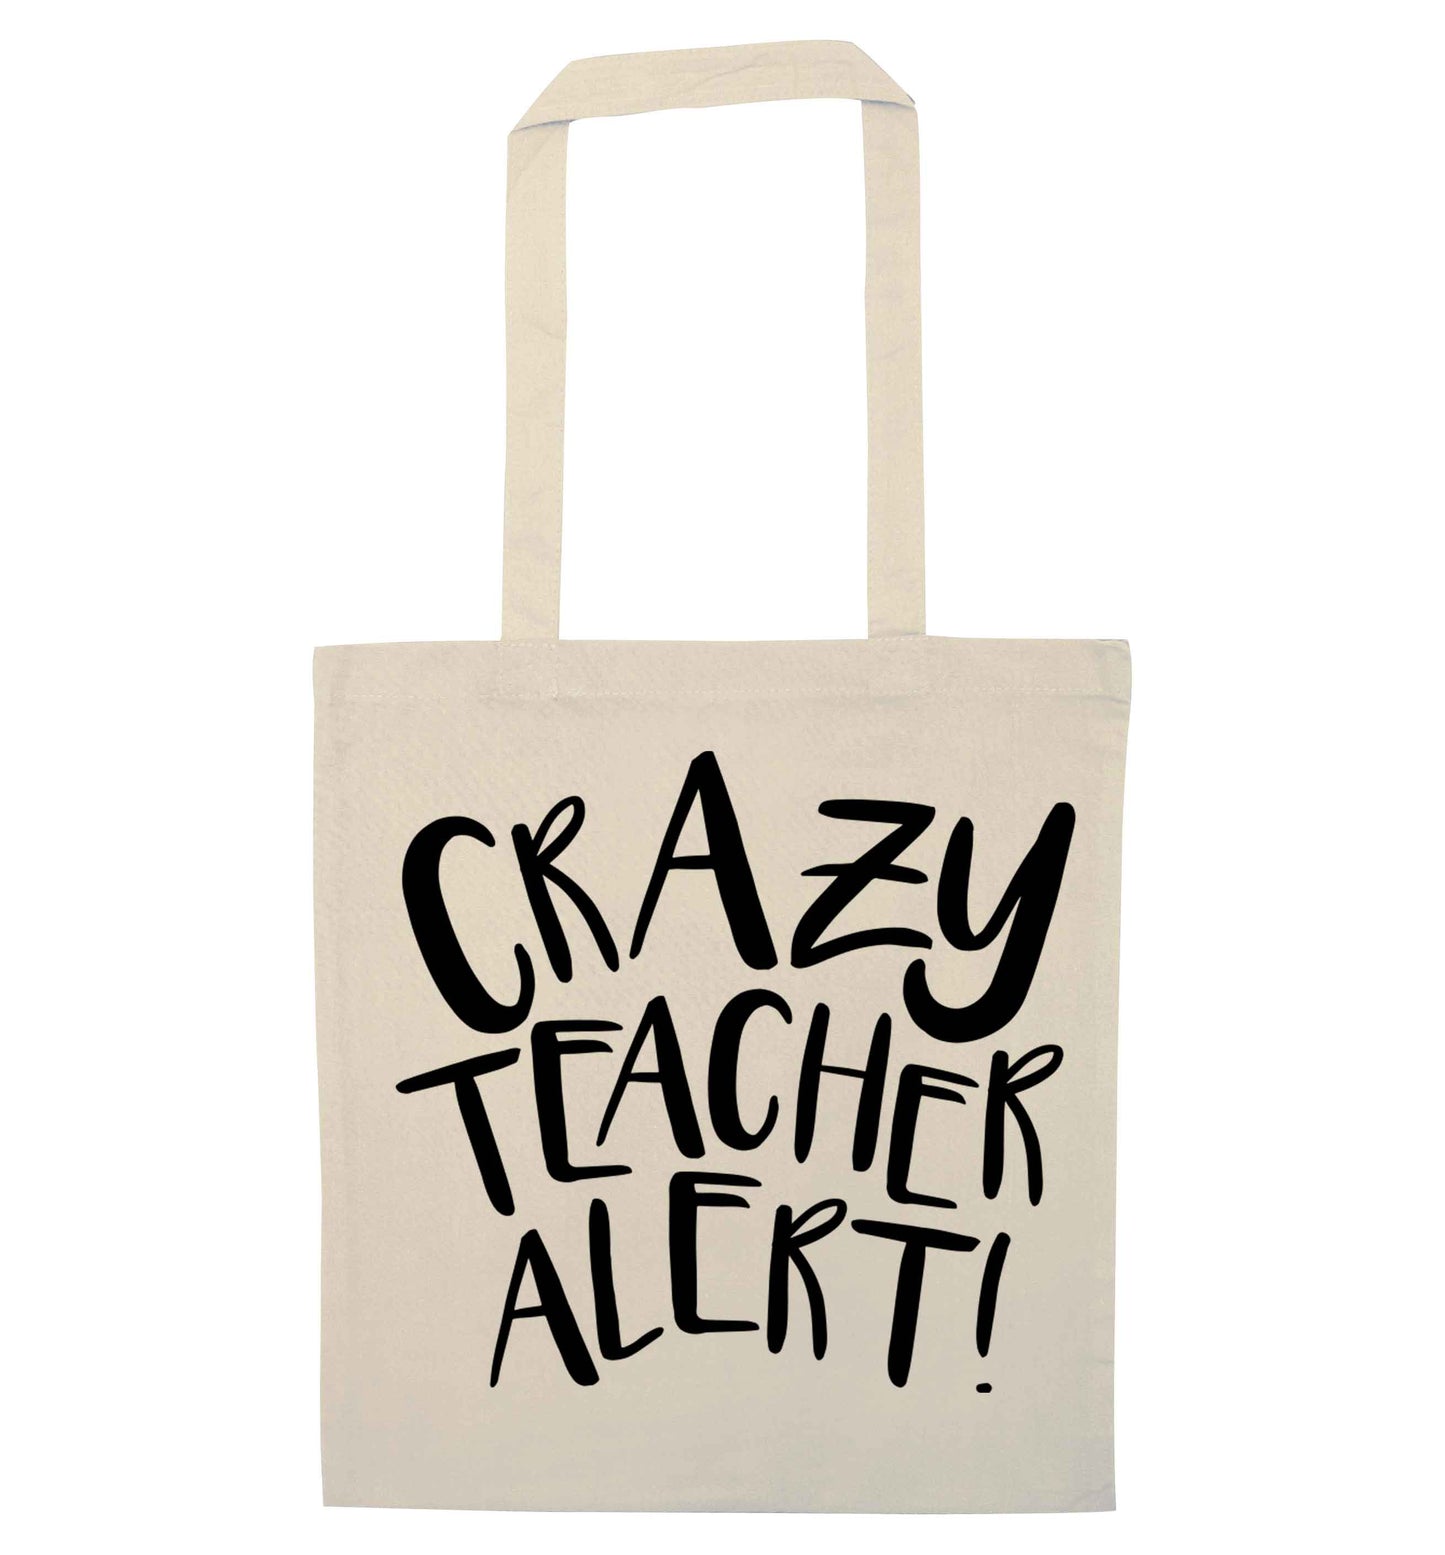 Crazy teacher alert natural tote bag